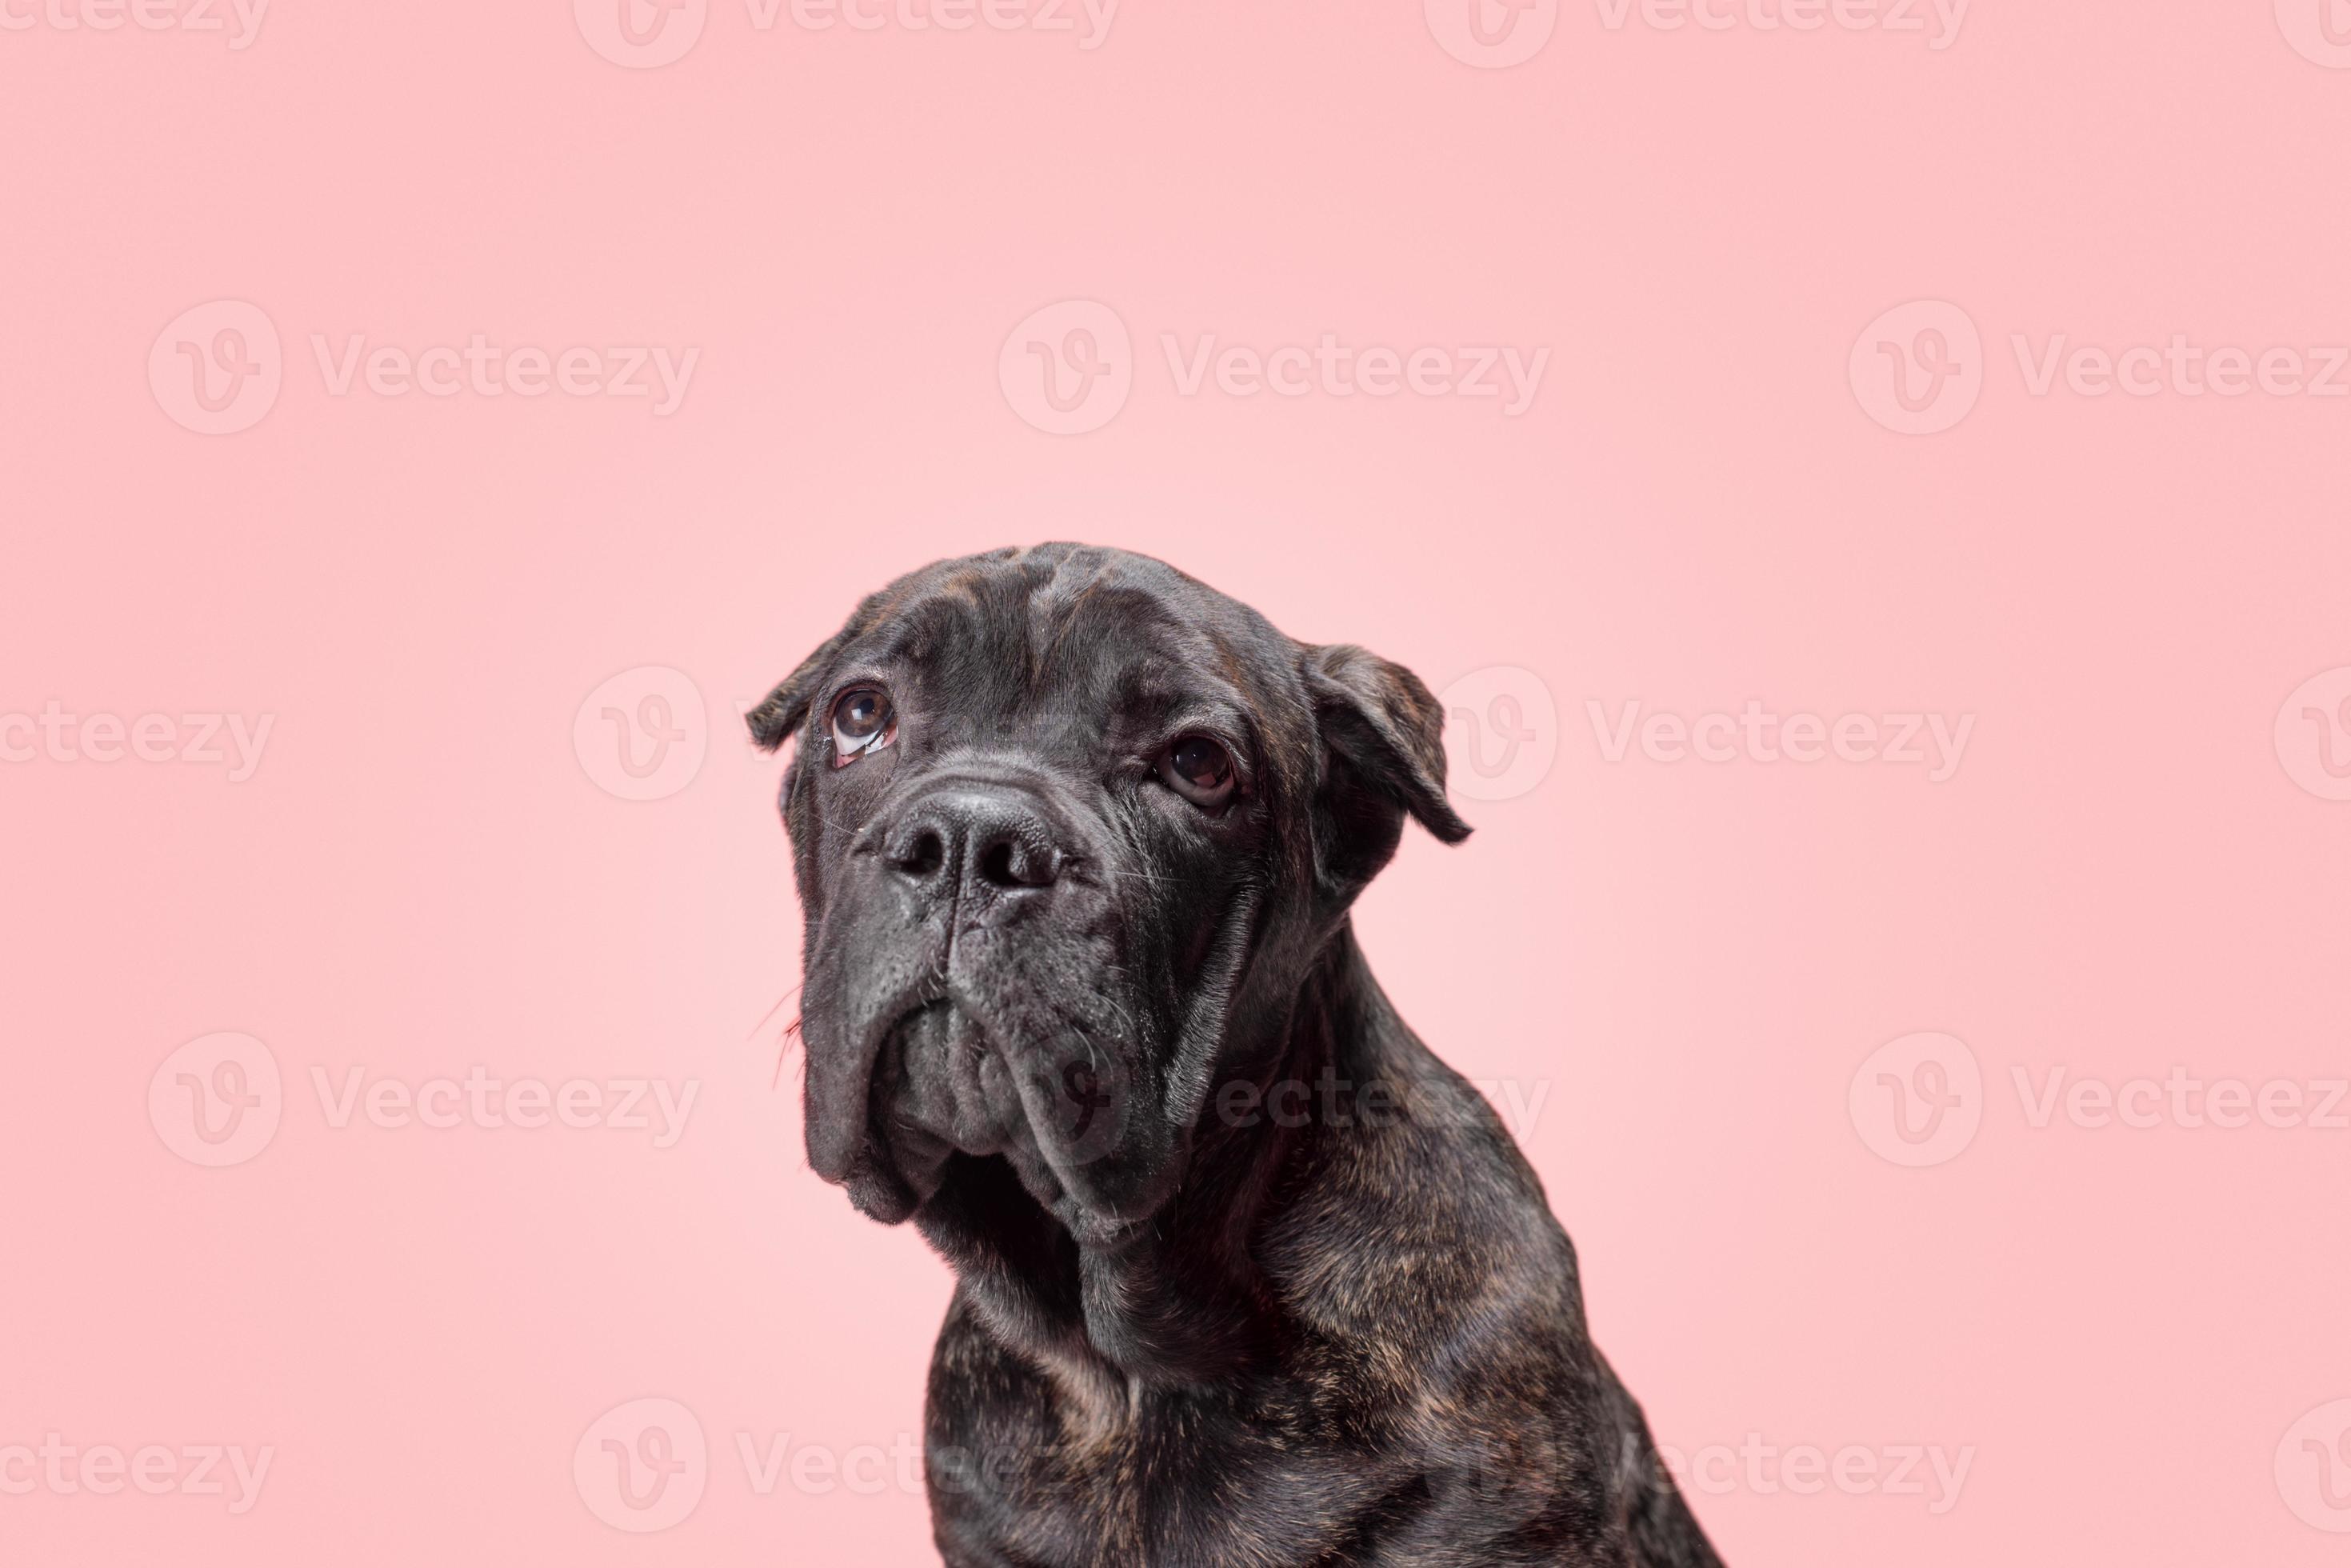 cucciolo tigrato della razza cane corso guarda tristemente su uno sfondo rosa foto